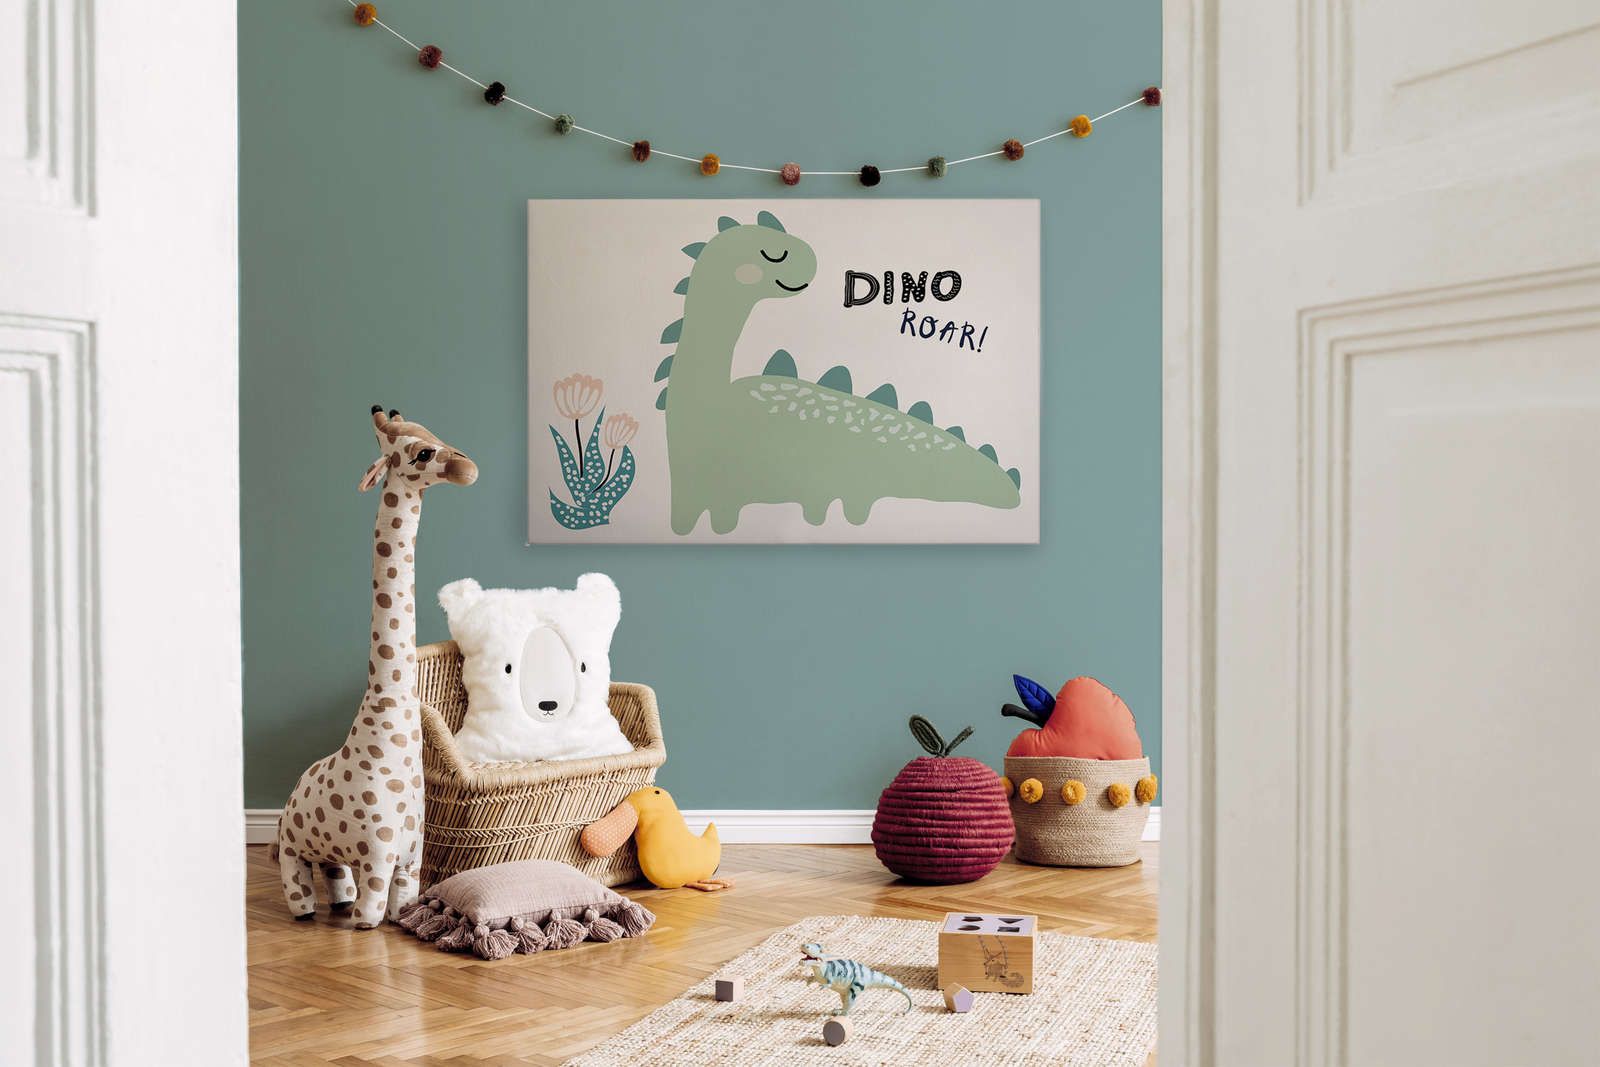             Leinwand mit gemaltem Dinosaurier – 120 cm x 80 cm
        